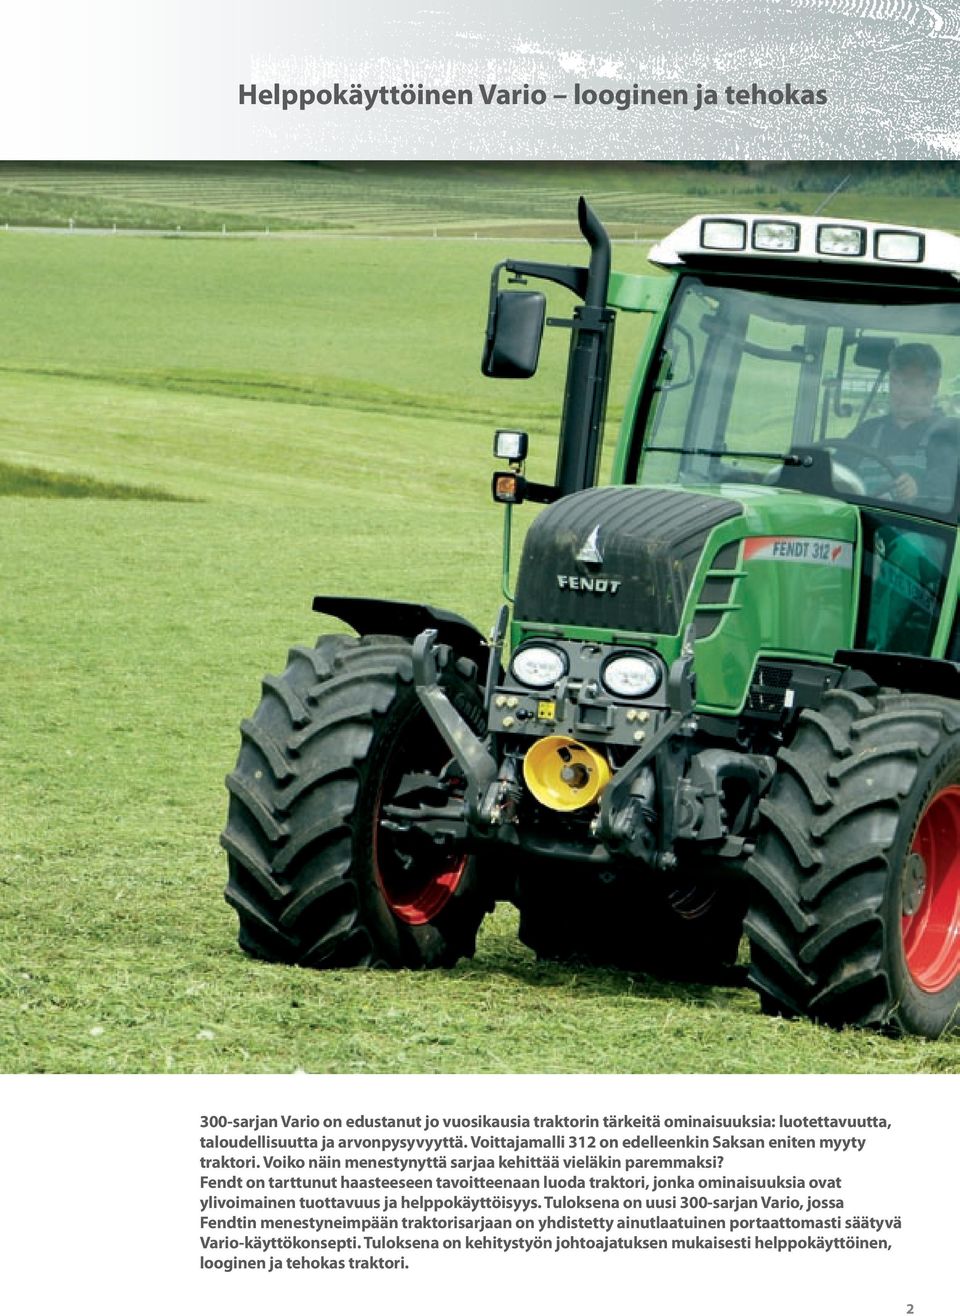 Fendt on tarttunut haasteeseen tavoitteenaan luoda traktori, jonka ominaisuuksia ovat ylivoimainen tuottavuus ja helppokäyttöisyys.